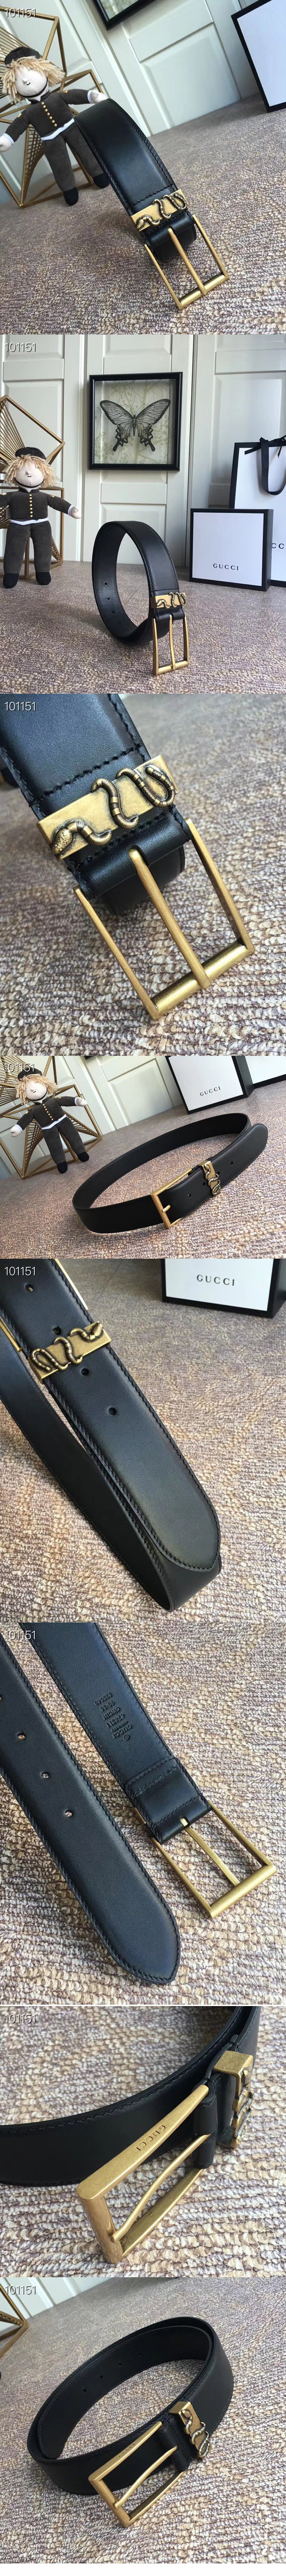 Replica Gucci Belts